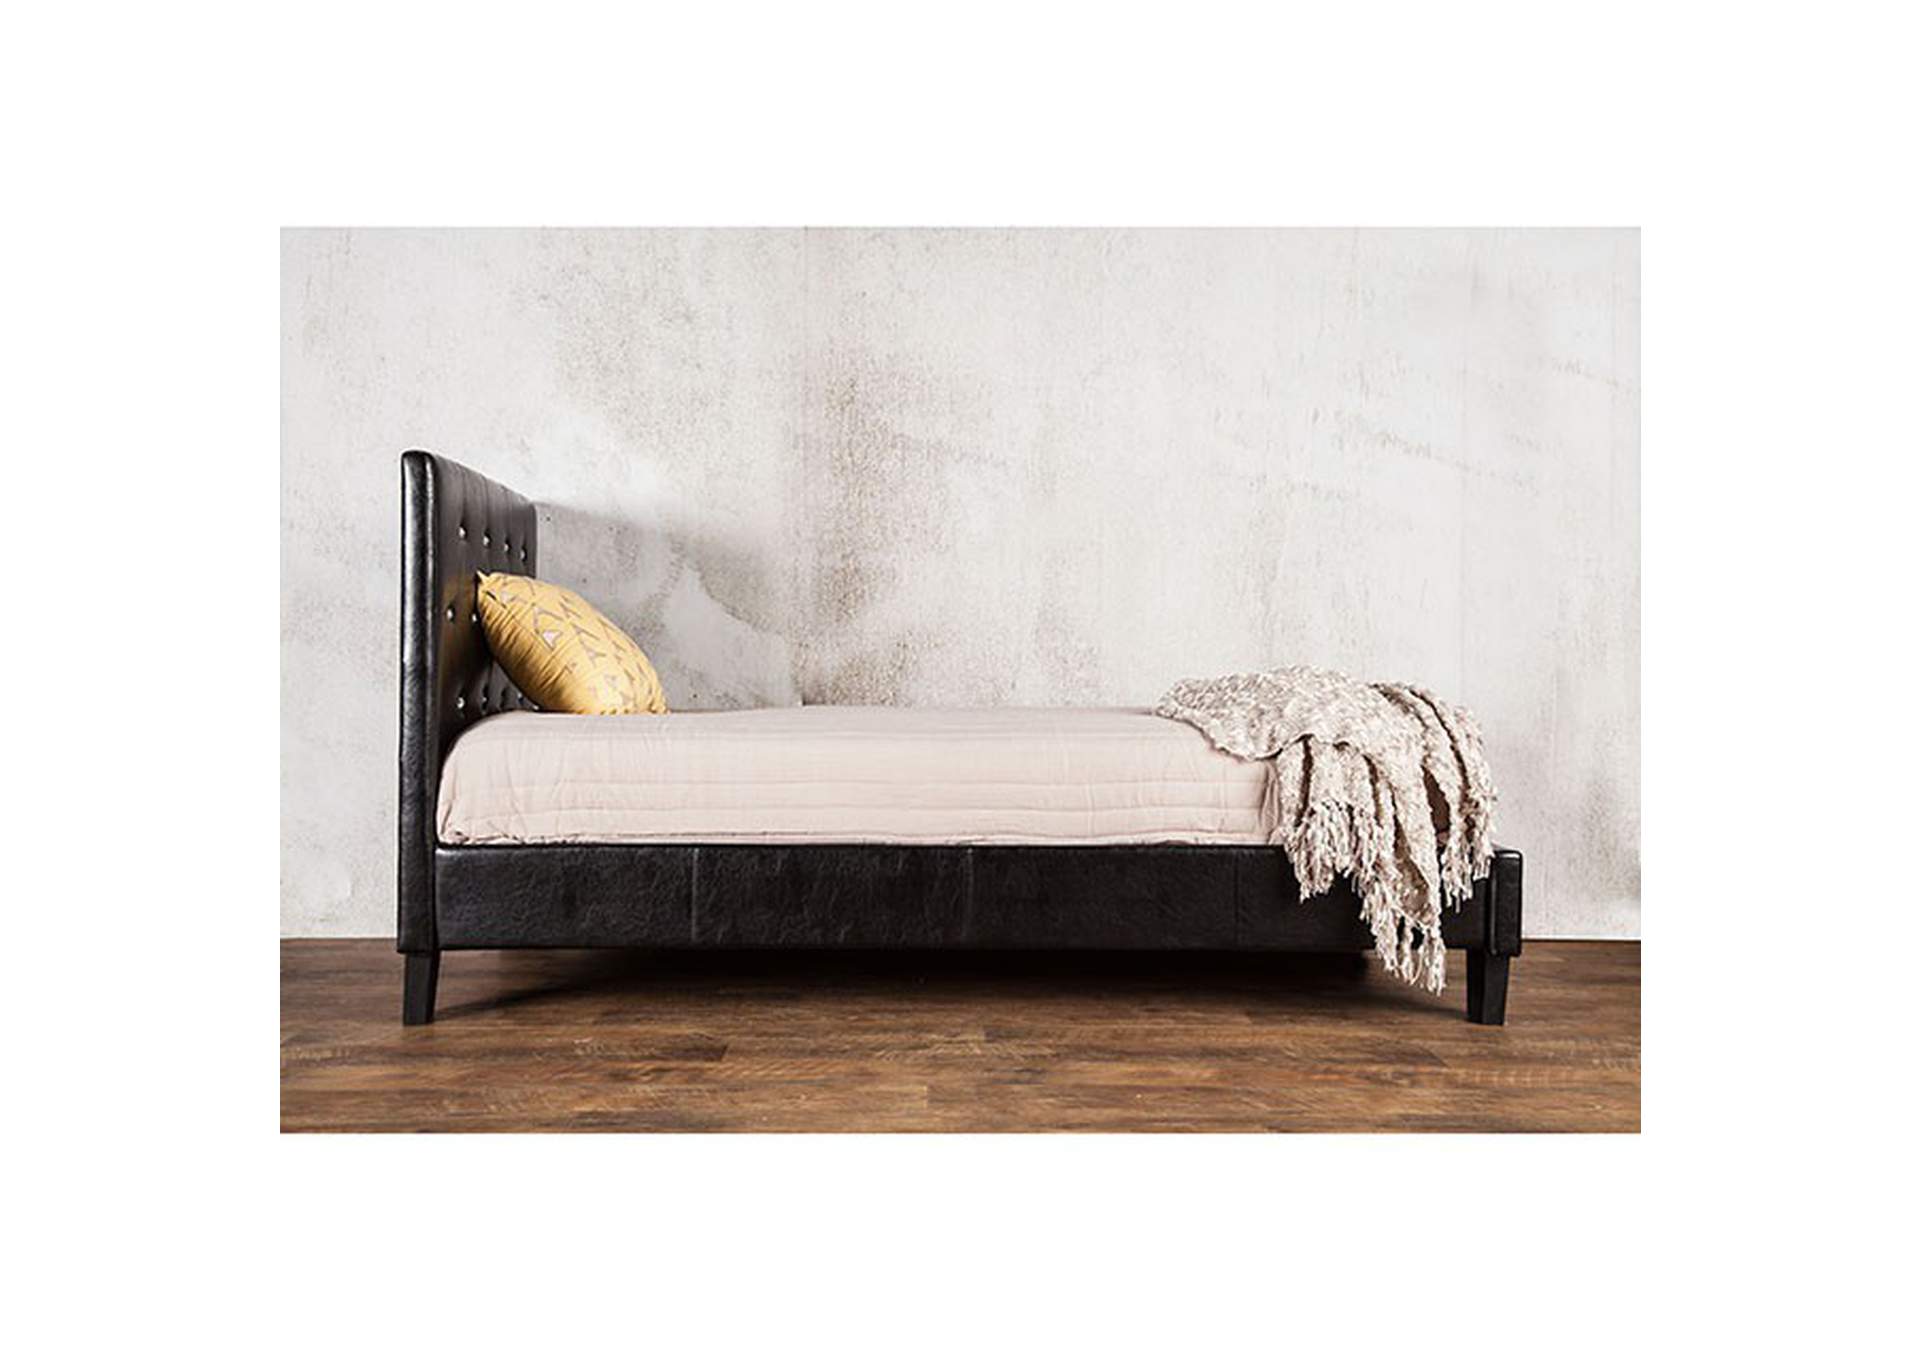 Velen Full Bed,Furniture of America